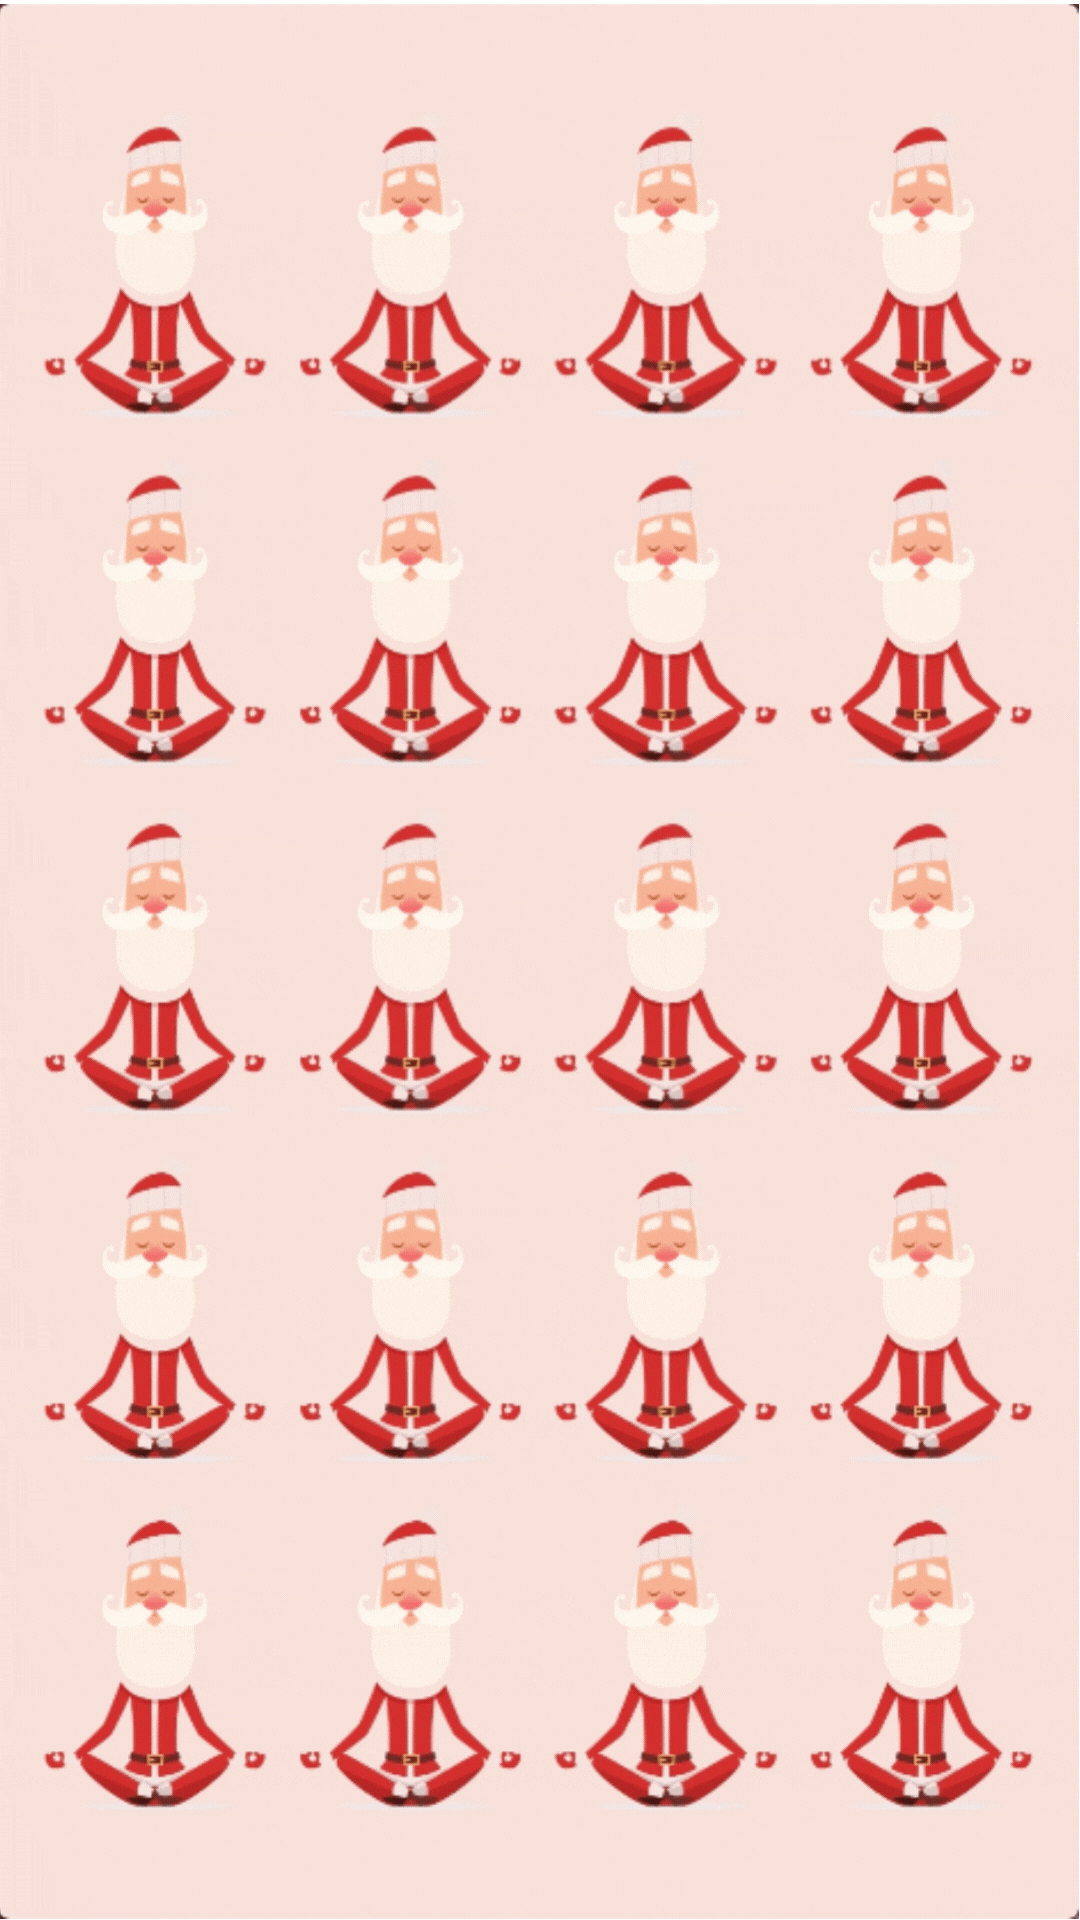 Yoga Christmas Card